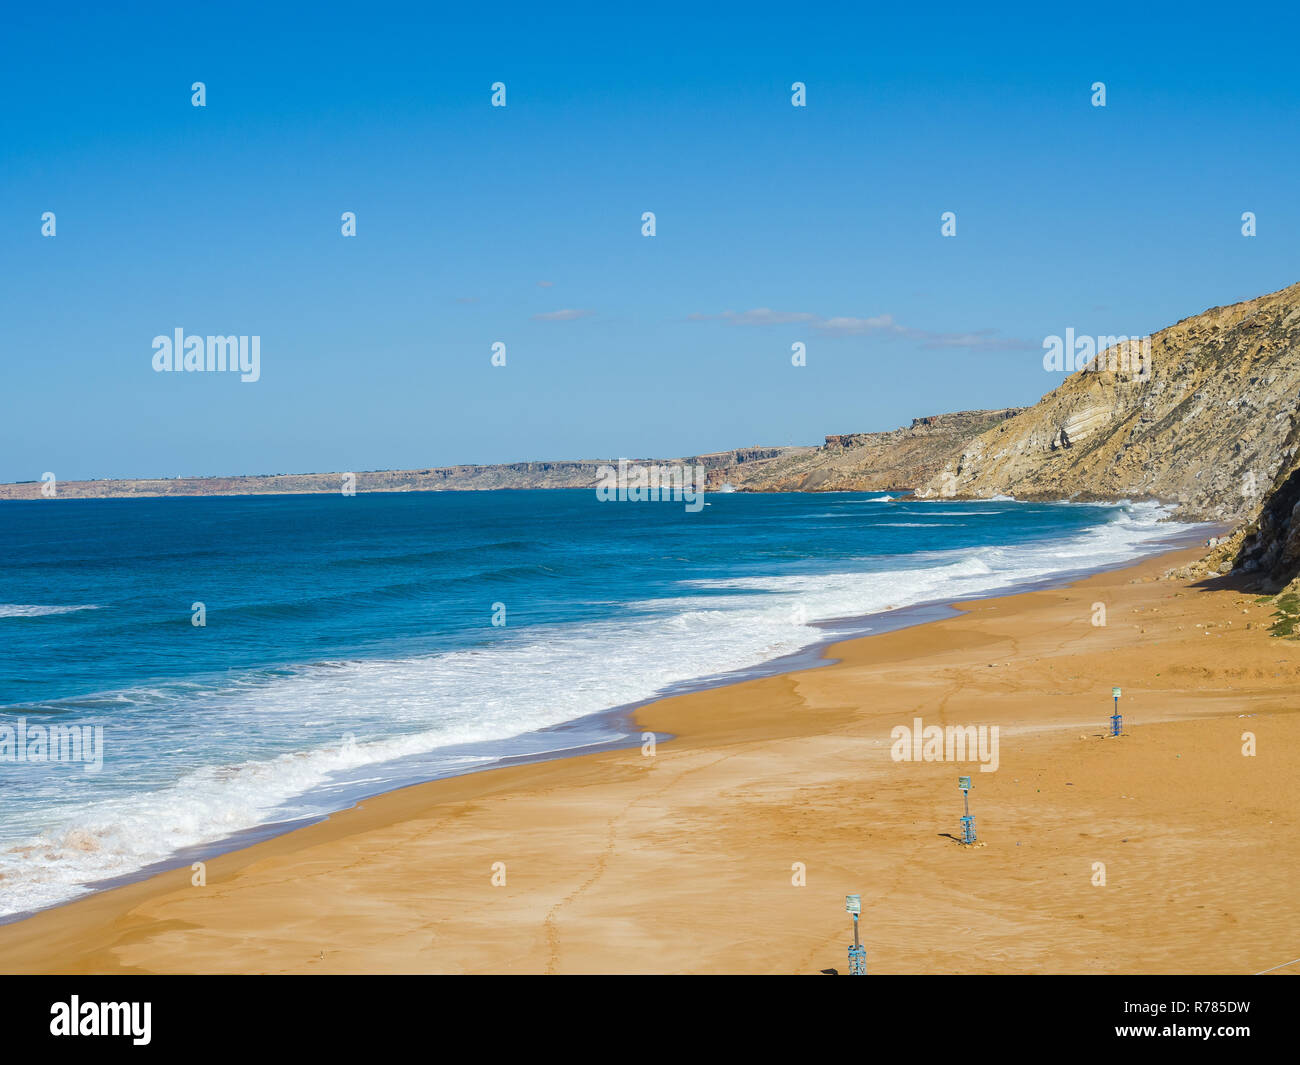 La plage de sable abandonnés près de Safi, Maroc Banque D'Images